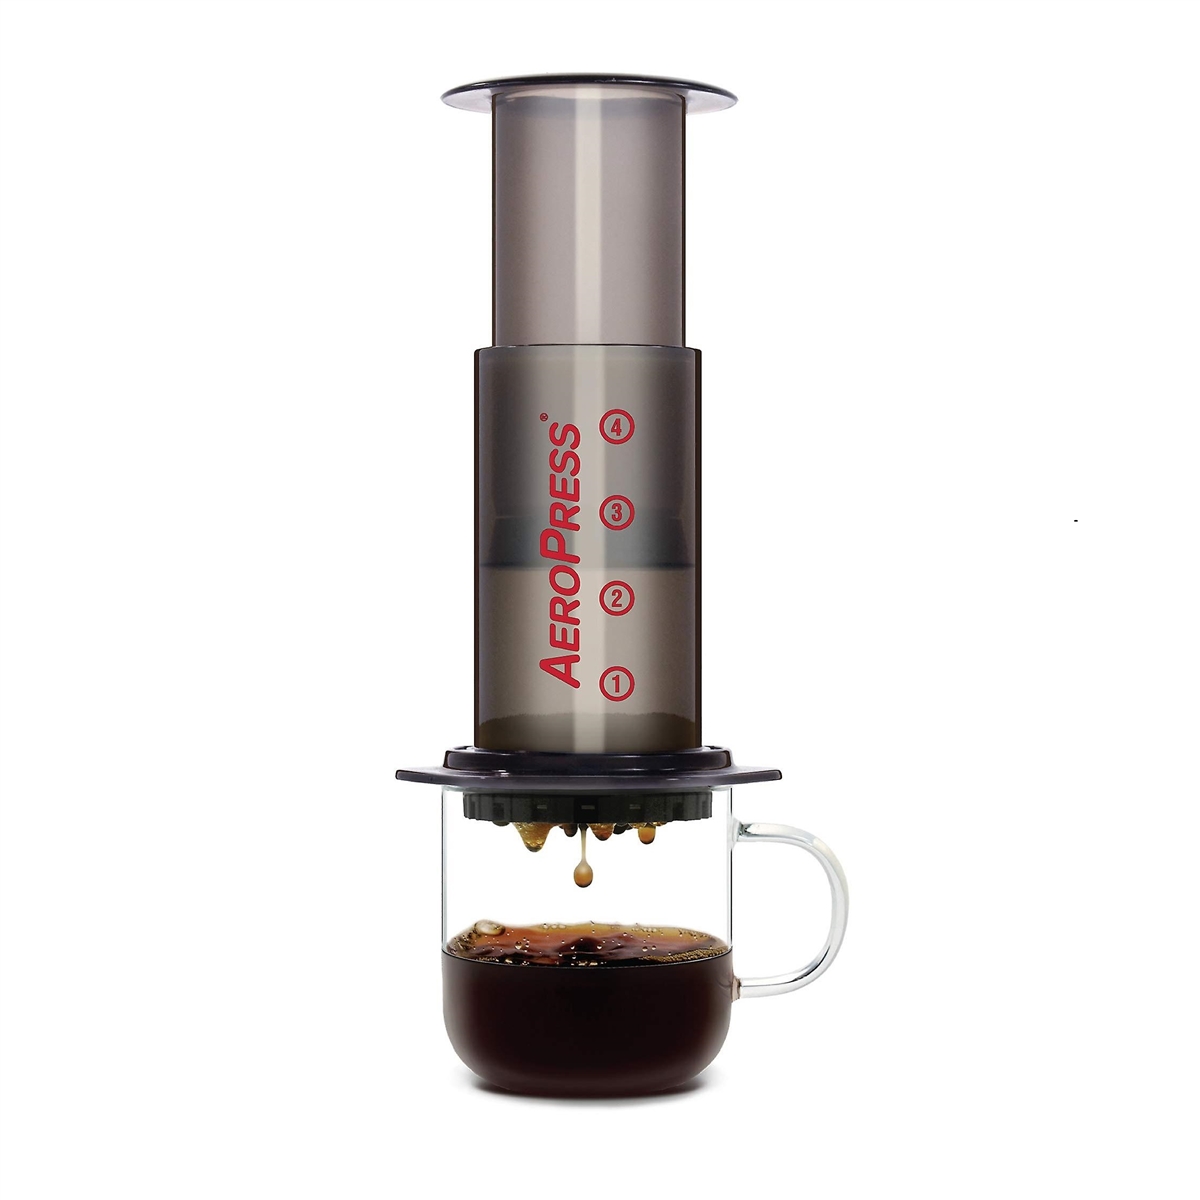 AeroPress - Special Bundle mit Original Kaffeemaschine + 350 Mikrofilter